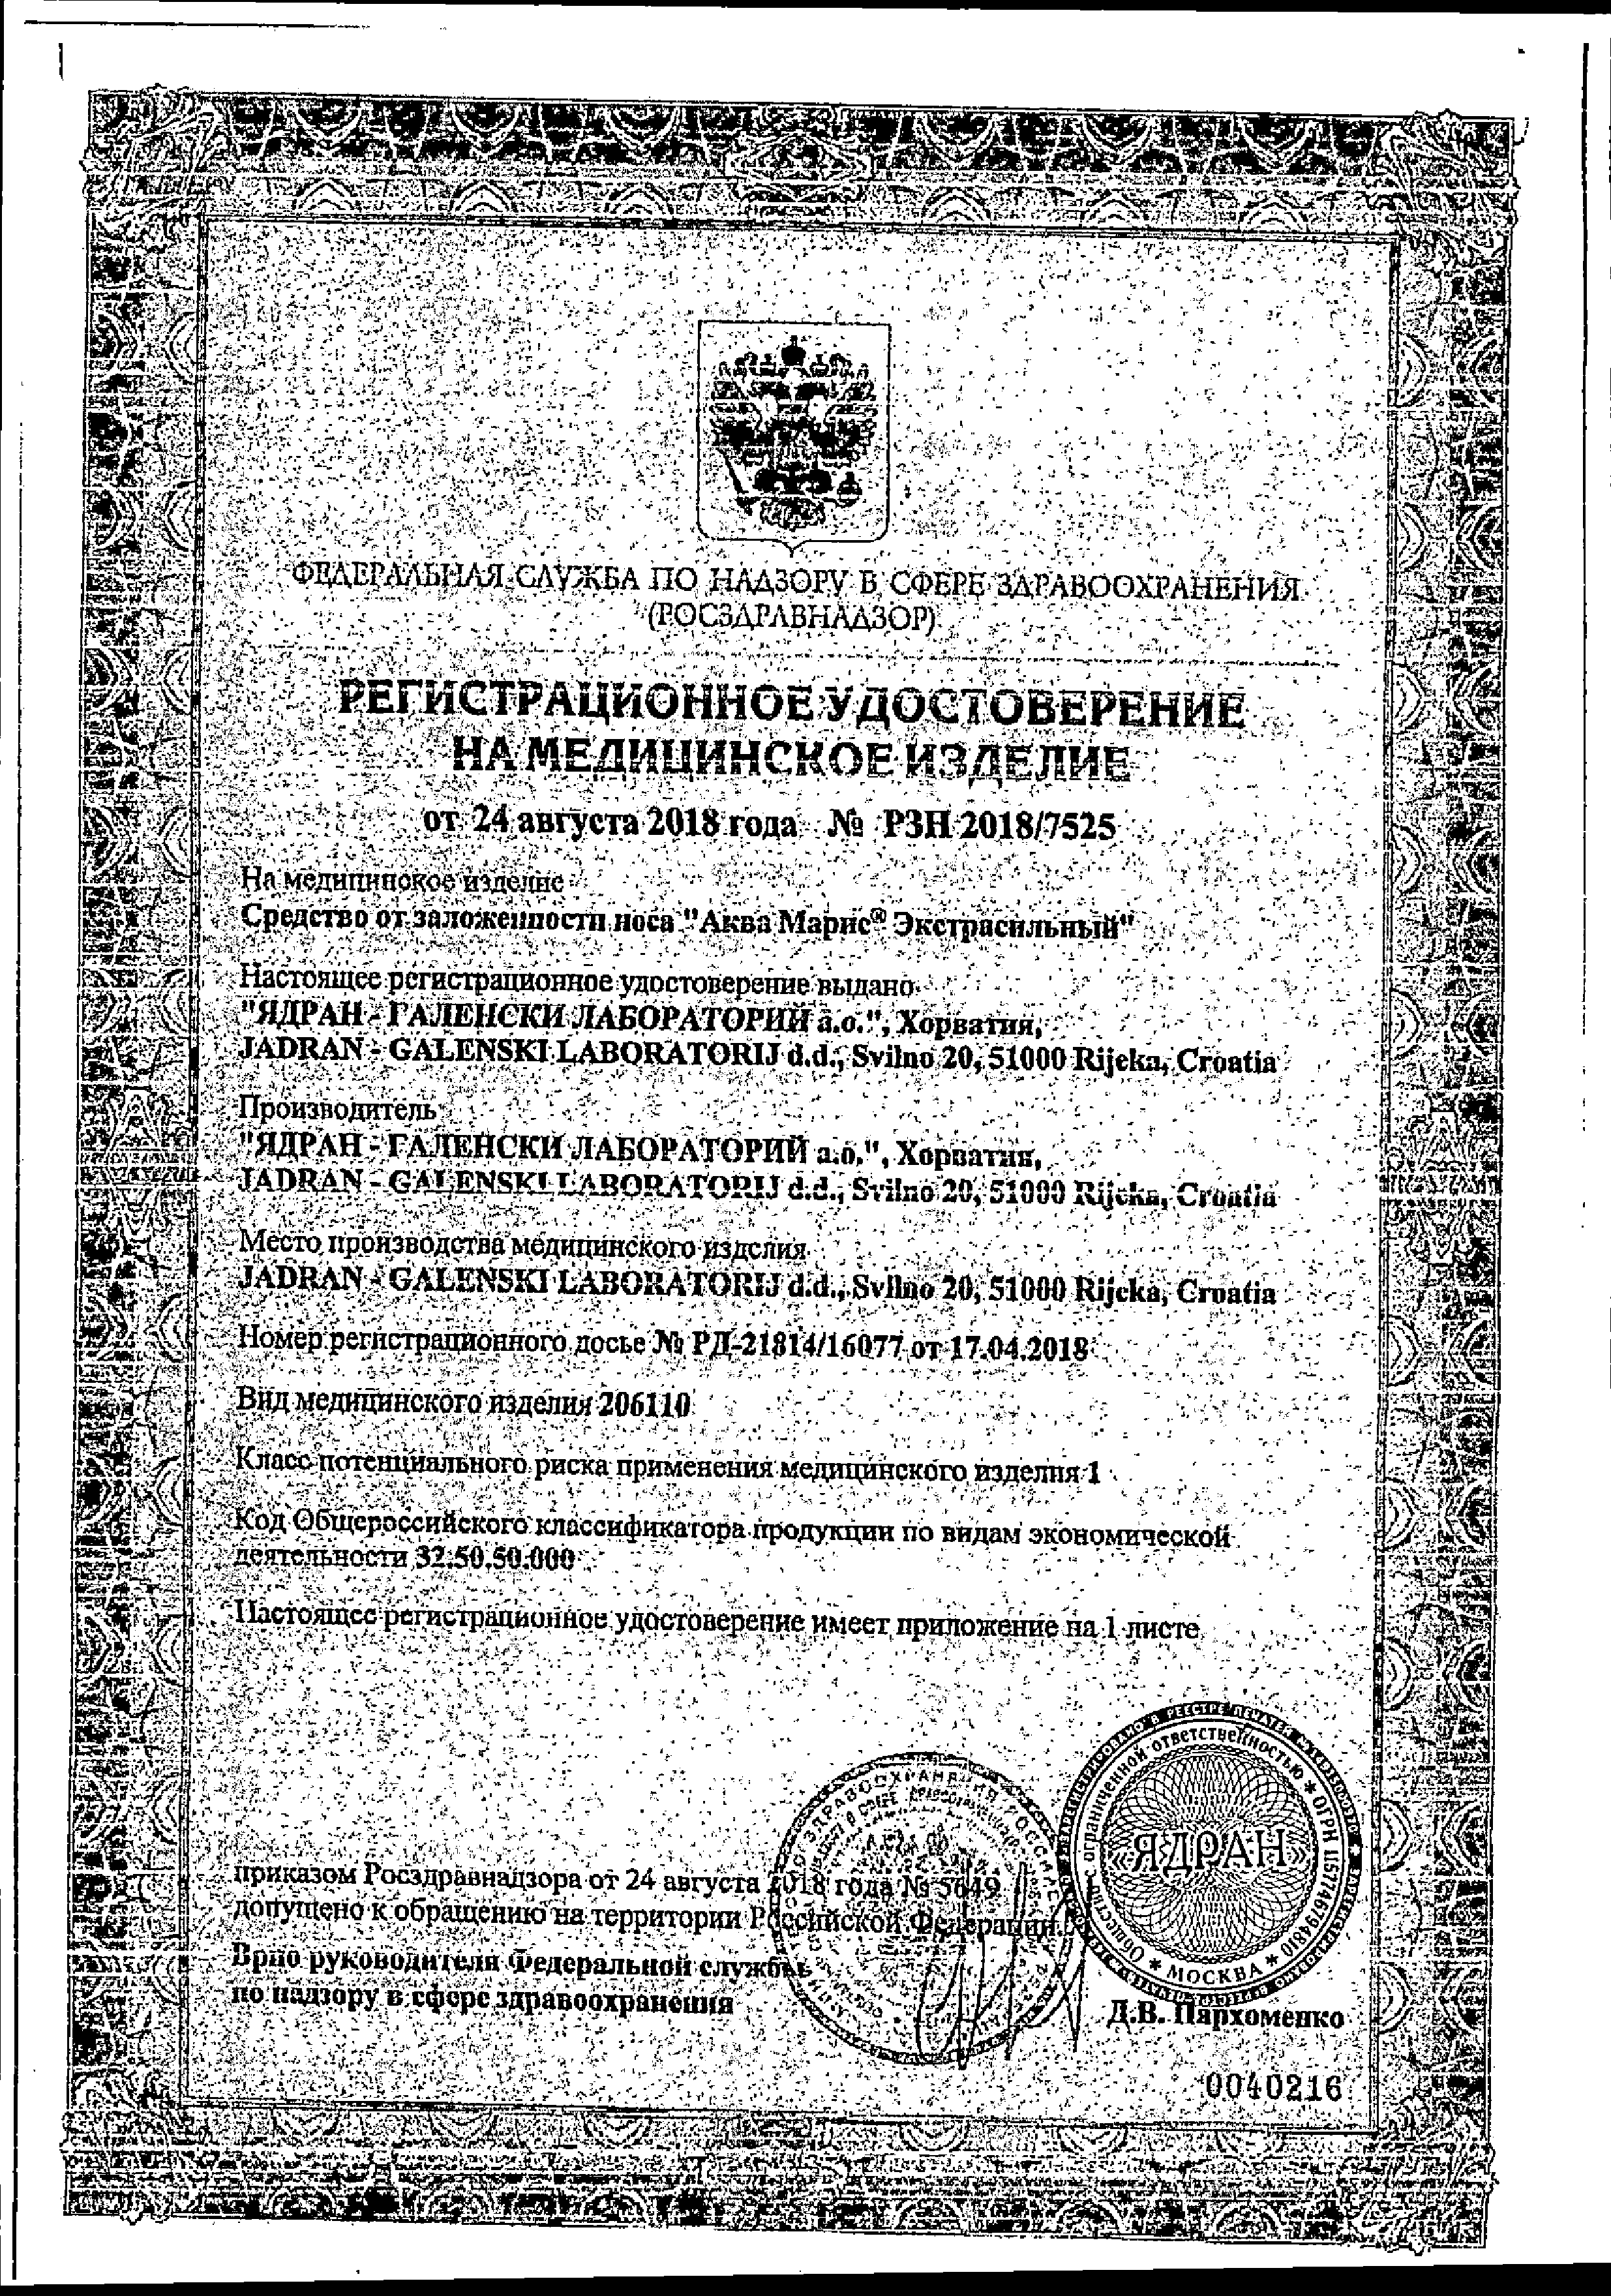 Аква Марис Экстрасильный сертификат